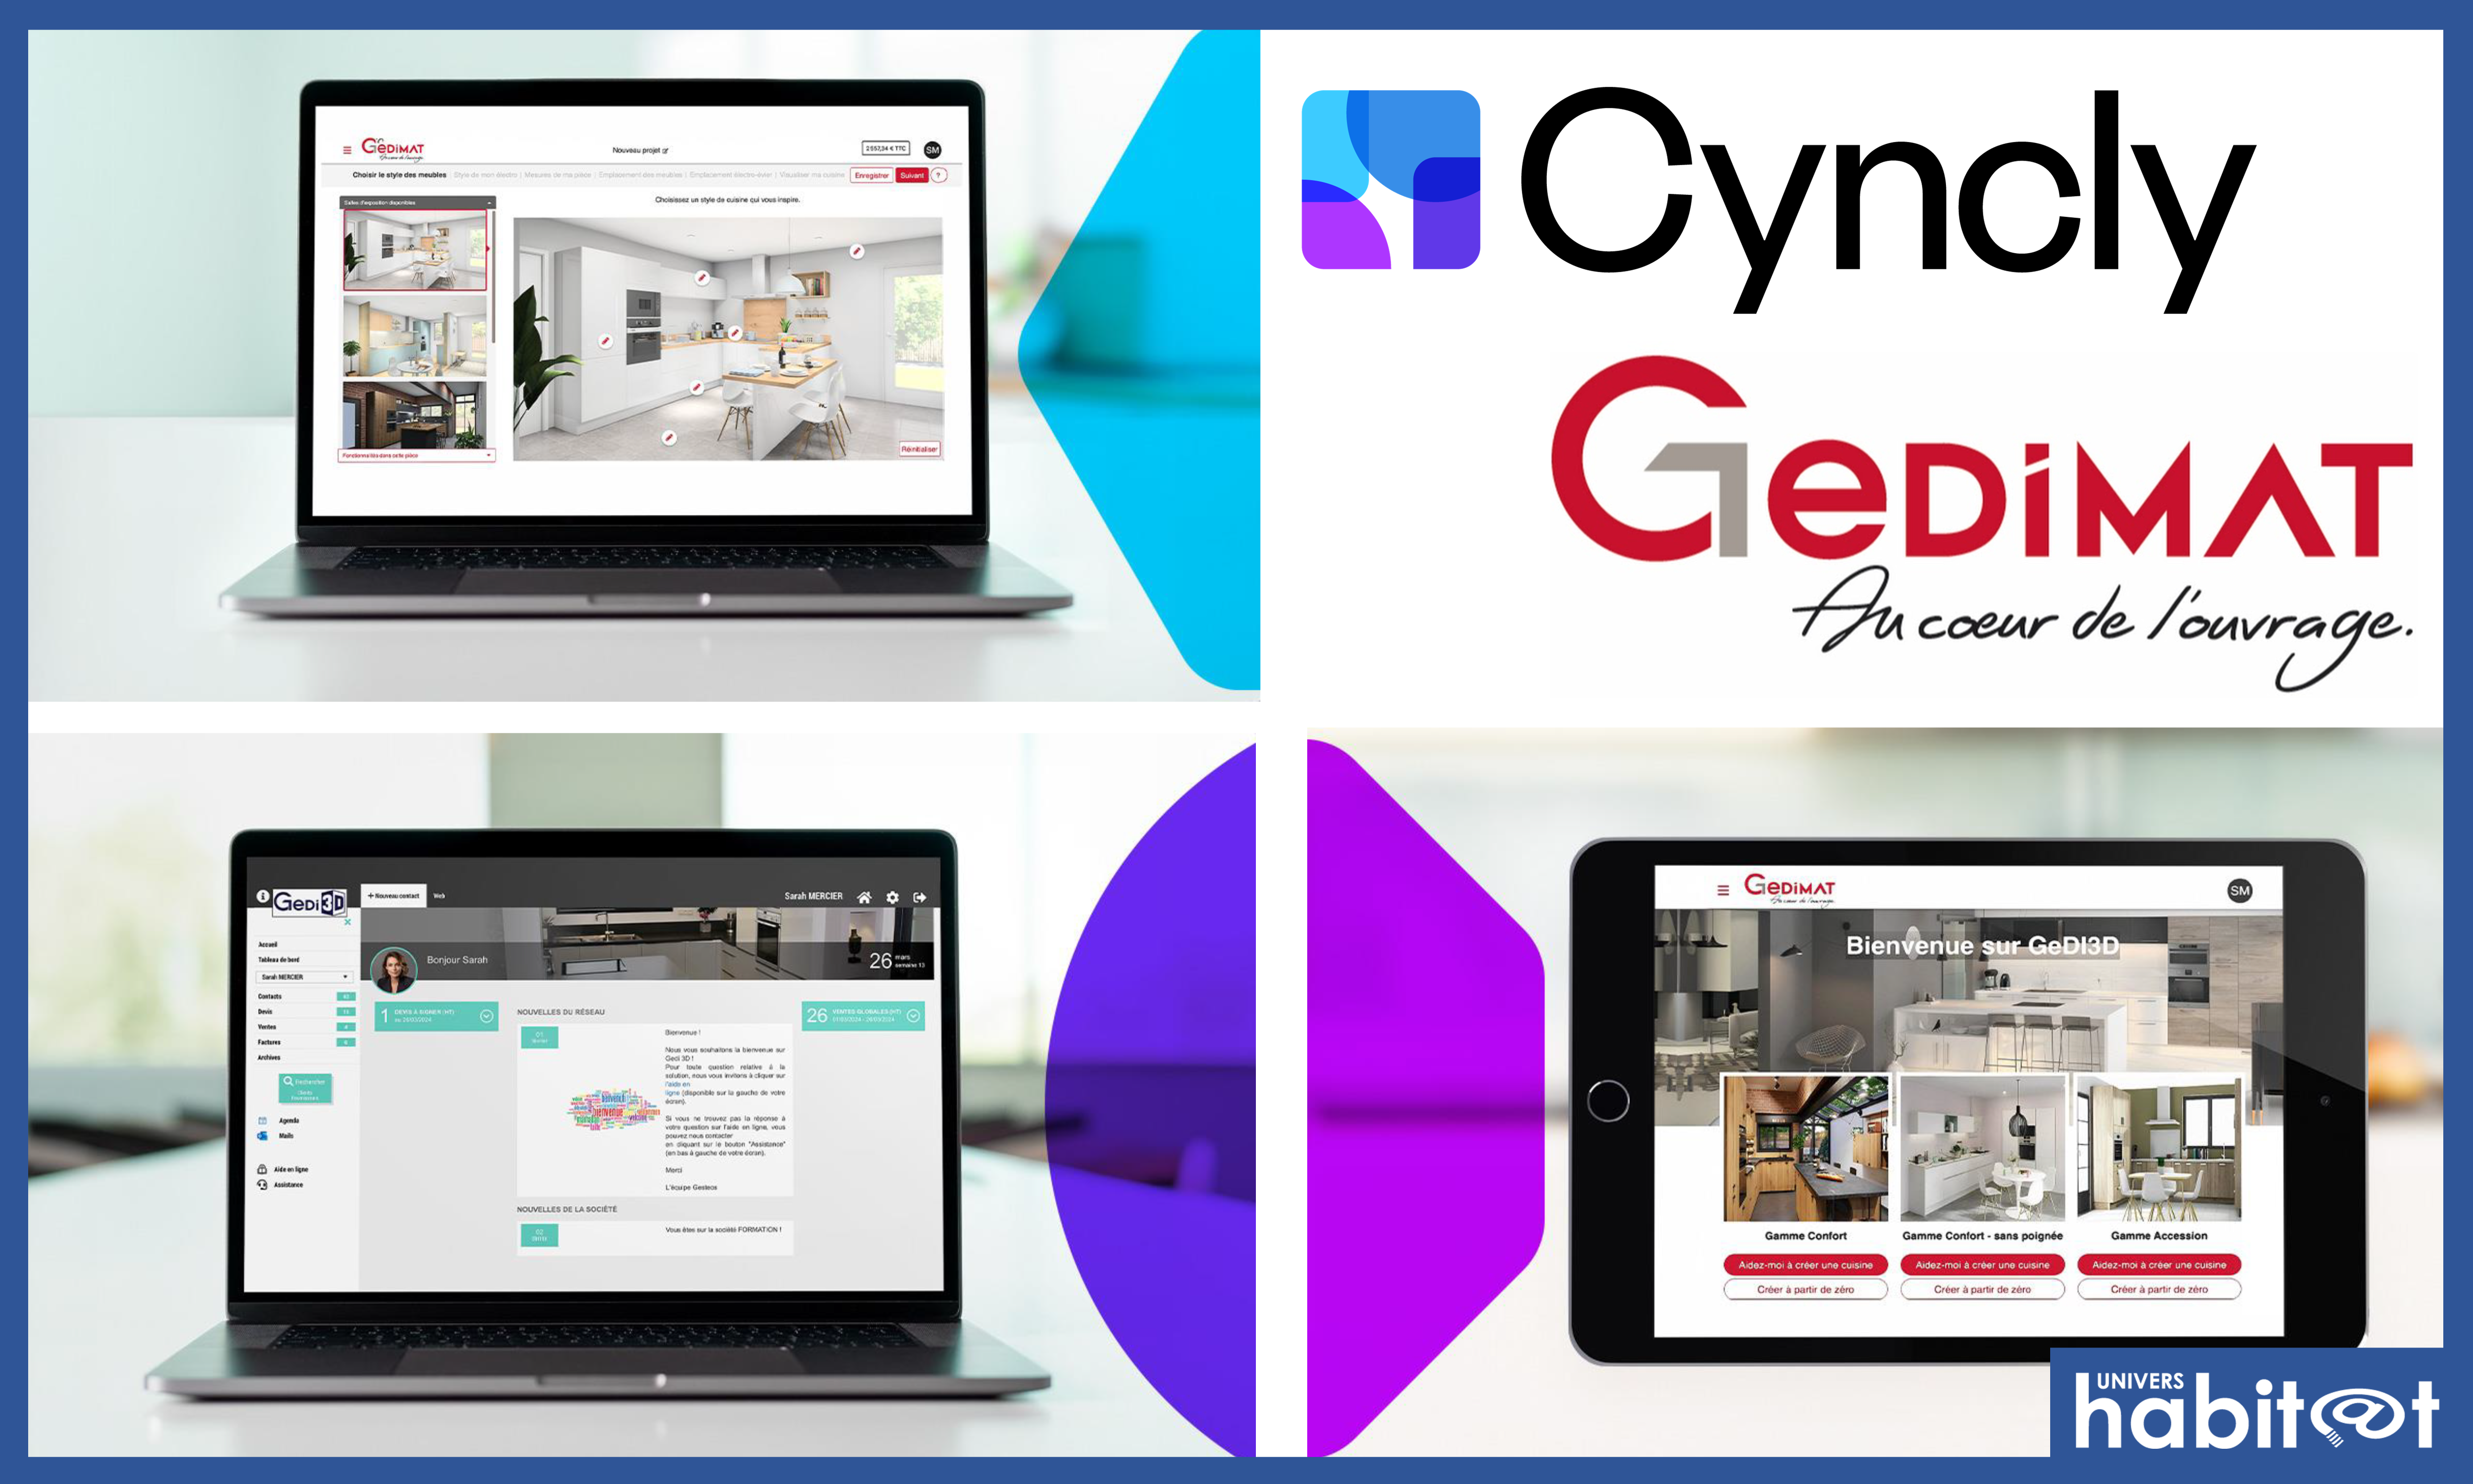 Cyncly et Gedimat présentent Gedi3D, leur solution de conception et vente de cuisines